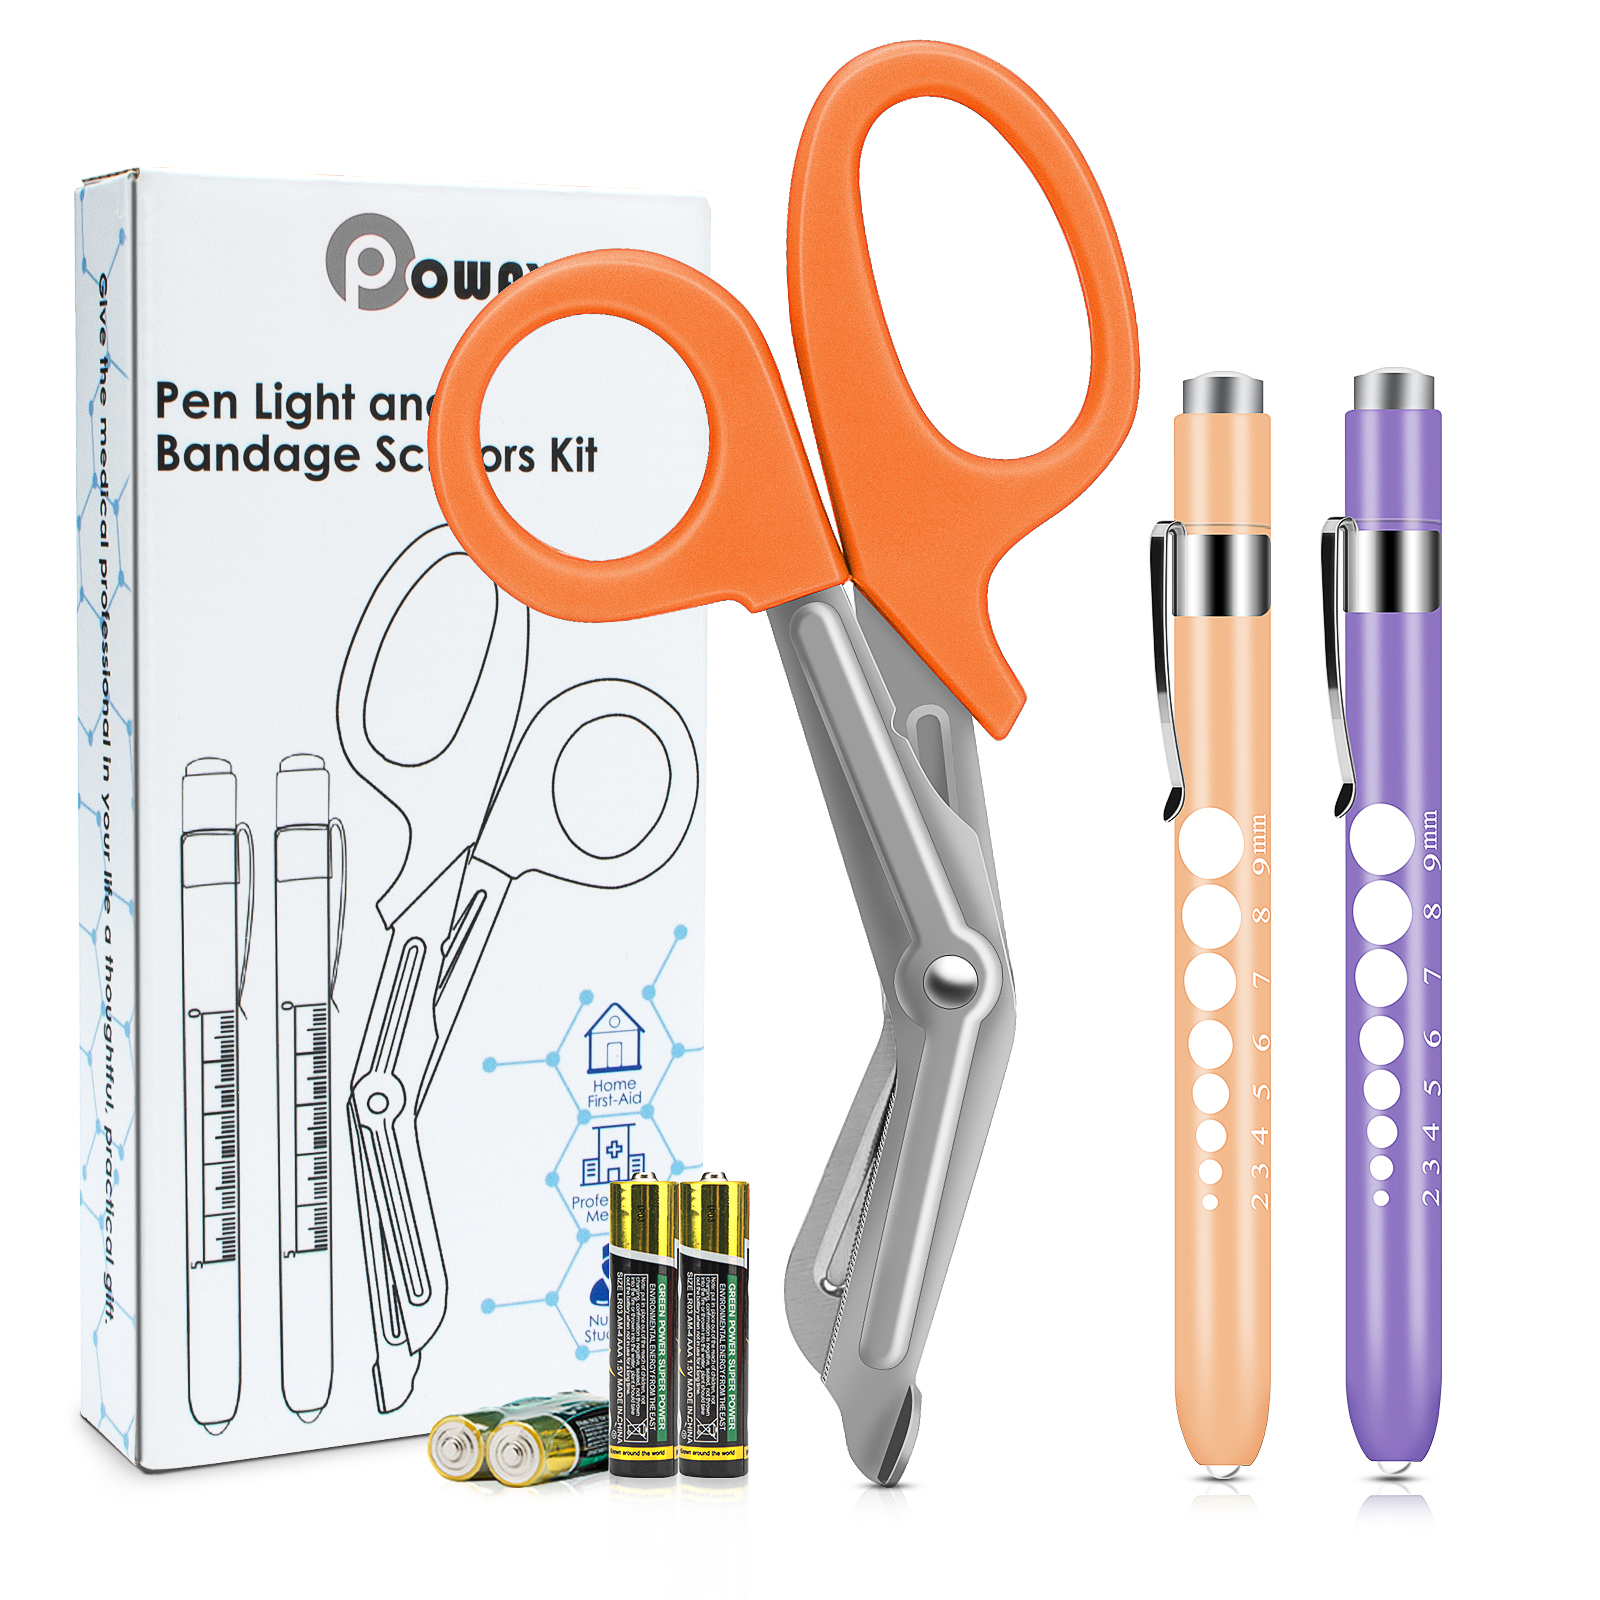 OPOWAY Medical Pen Light и ножницы для перевязки оранжевого цвета 3 Пакет, Два многоразовых светодиодных фонарика для зрачков,  с бесплатными батареями